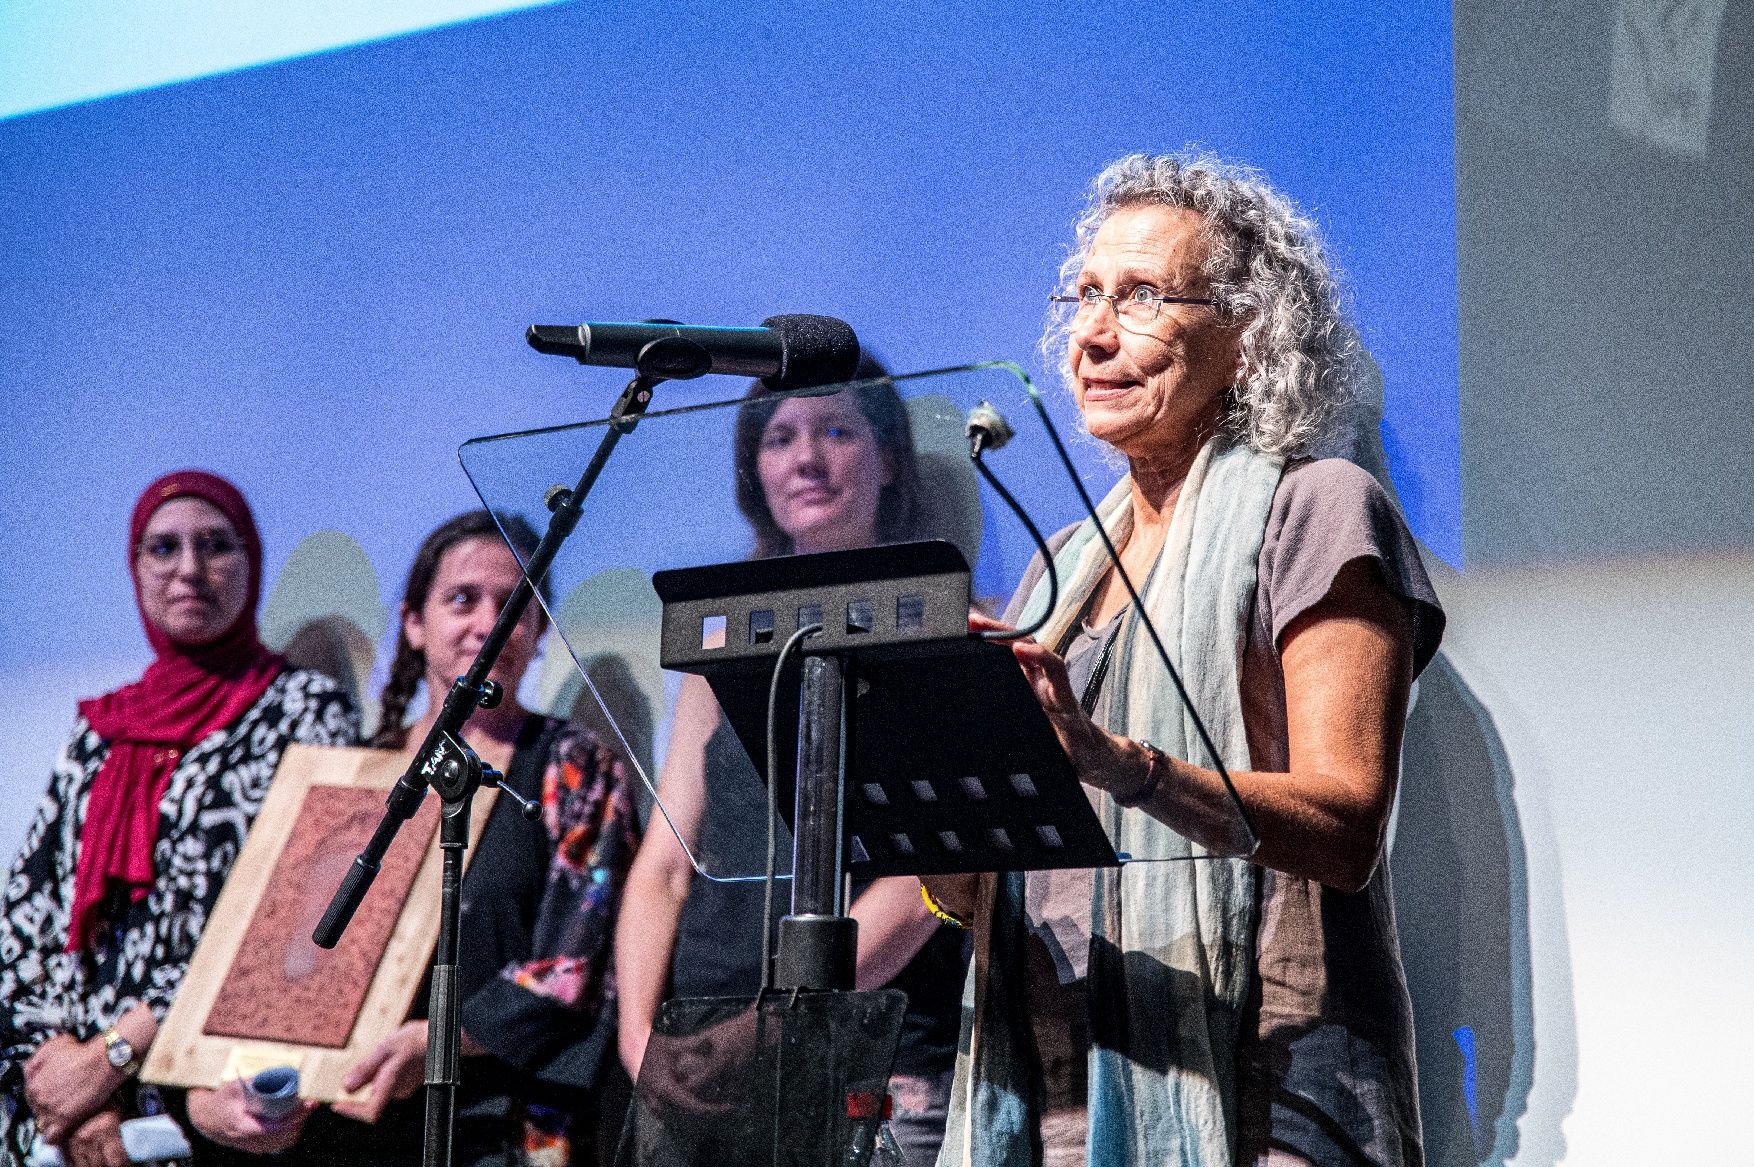 Les imatges del premi Pere Càsaliga en el Festival Clam que ha reconegut a Càrties